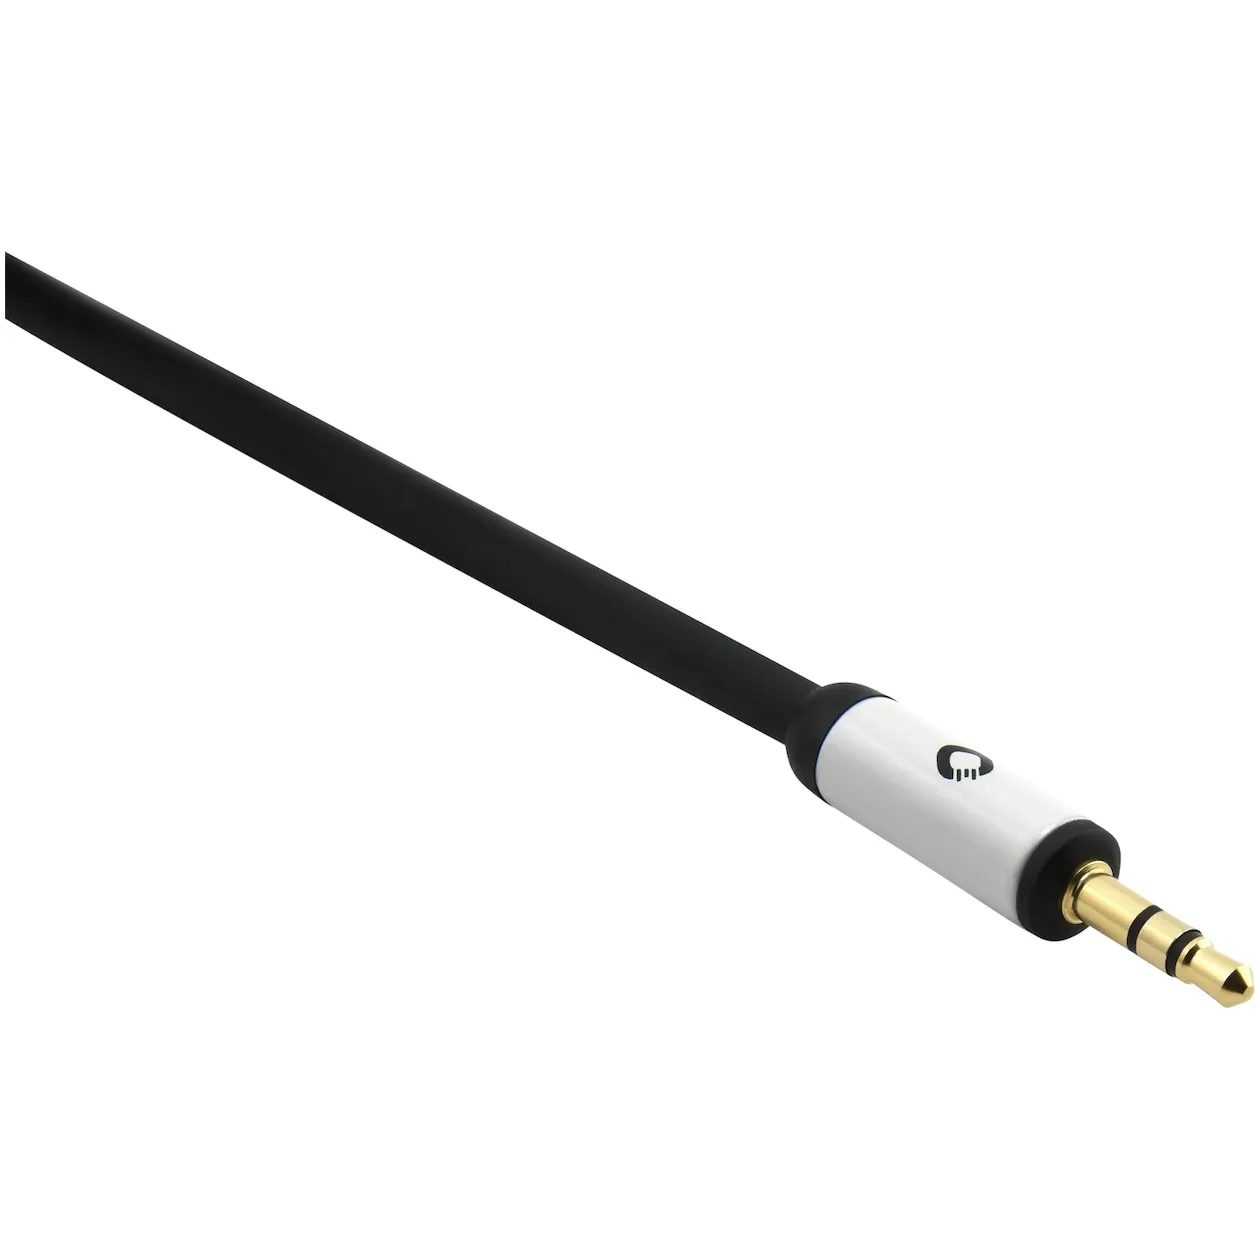 Oehlbach Mobiele audiokabel, 3,5 mm jack naar 3,5 mm jack lengte 1,5 meter